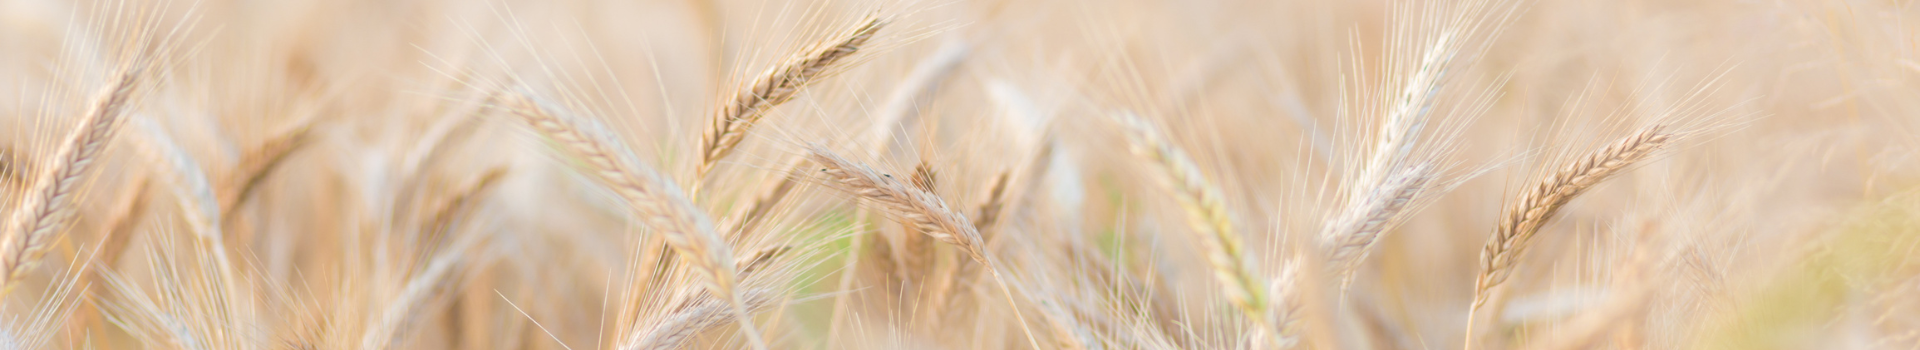 Модели болезней - пшеница